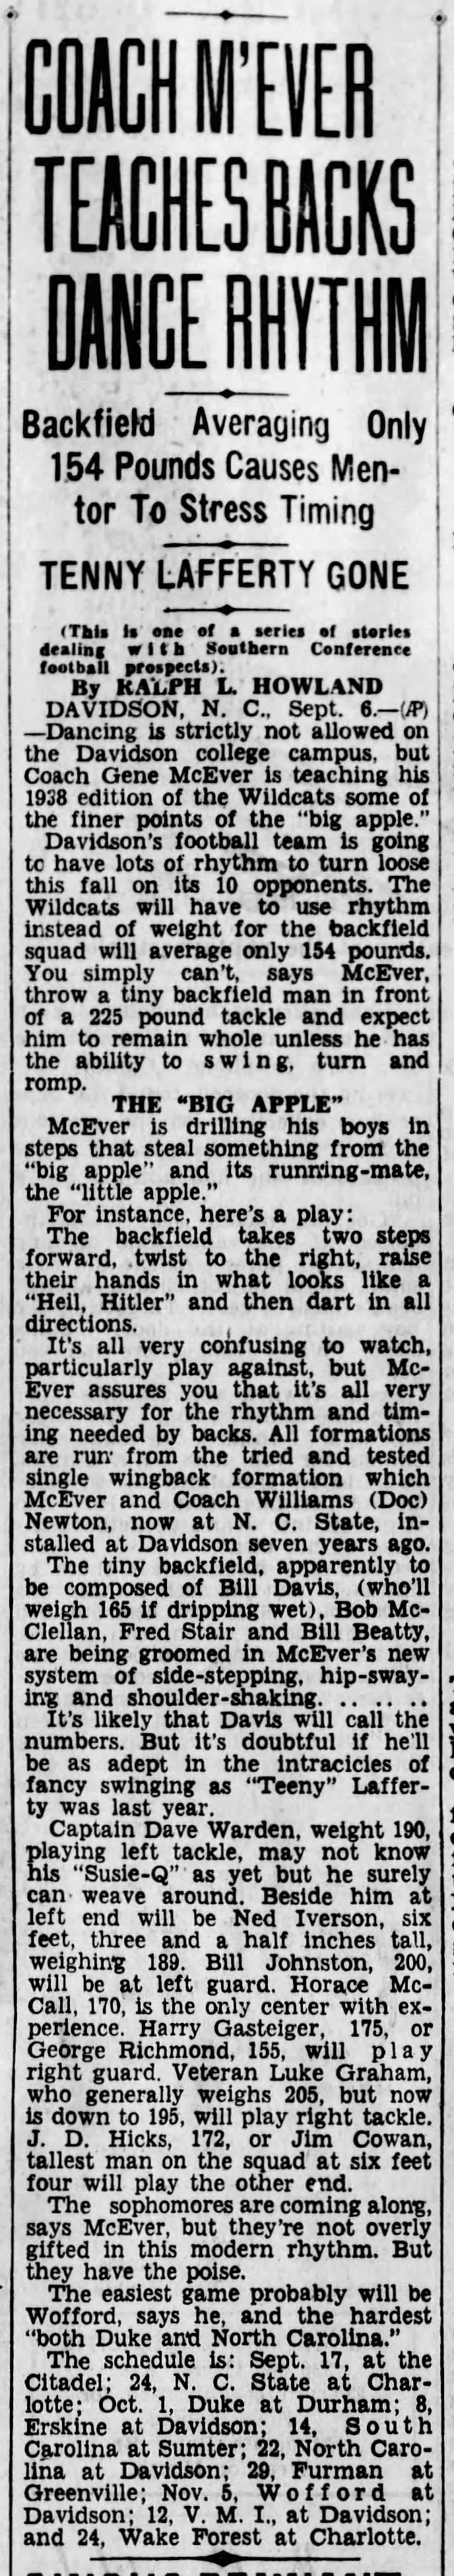 "Big Apple" play at Davidson (1938).